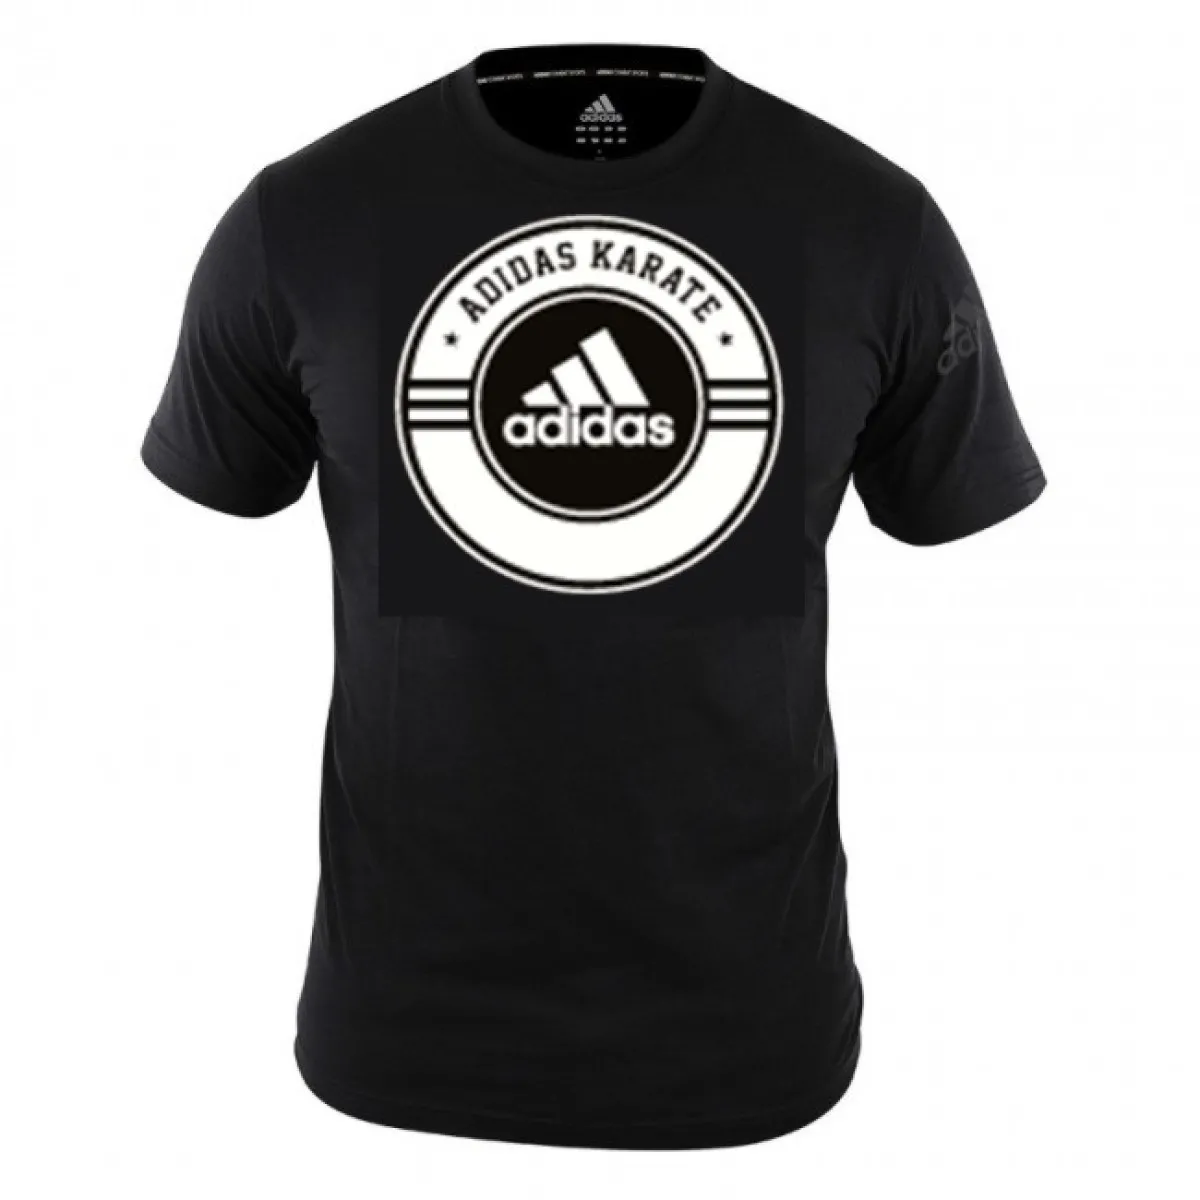 adidas Combat T-Shirt Karate schwarz/weiß